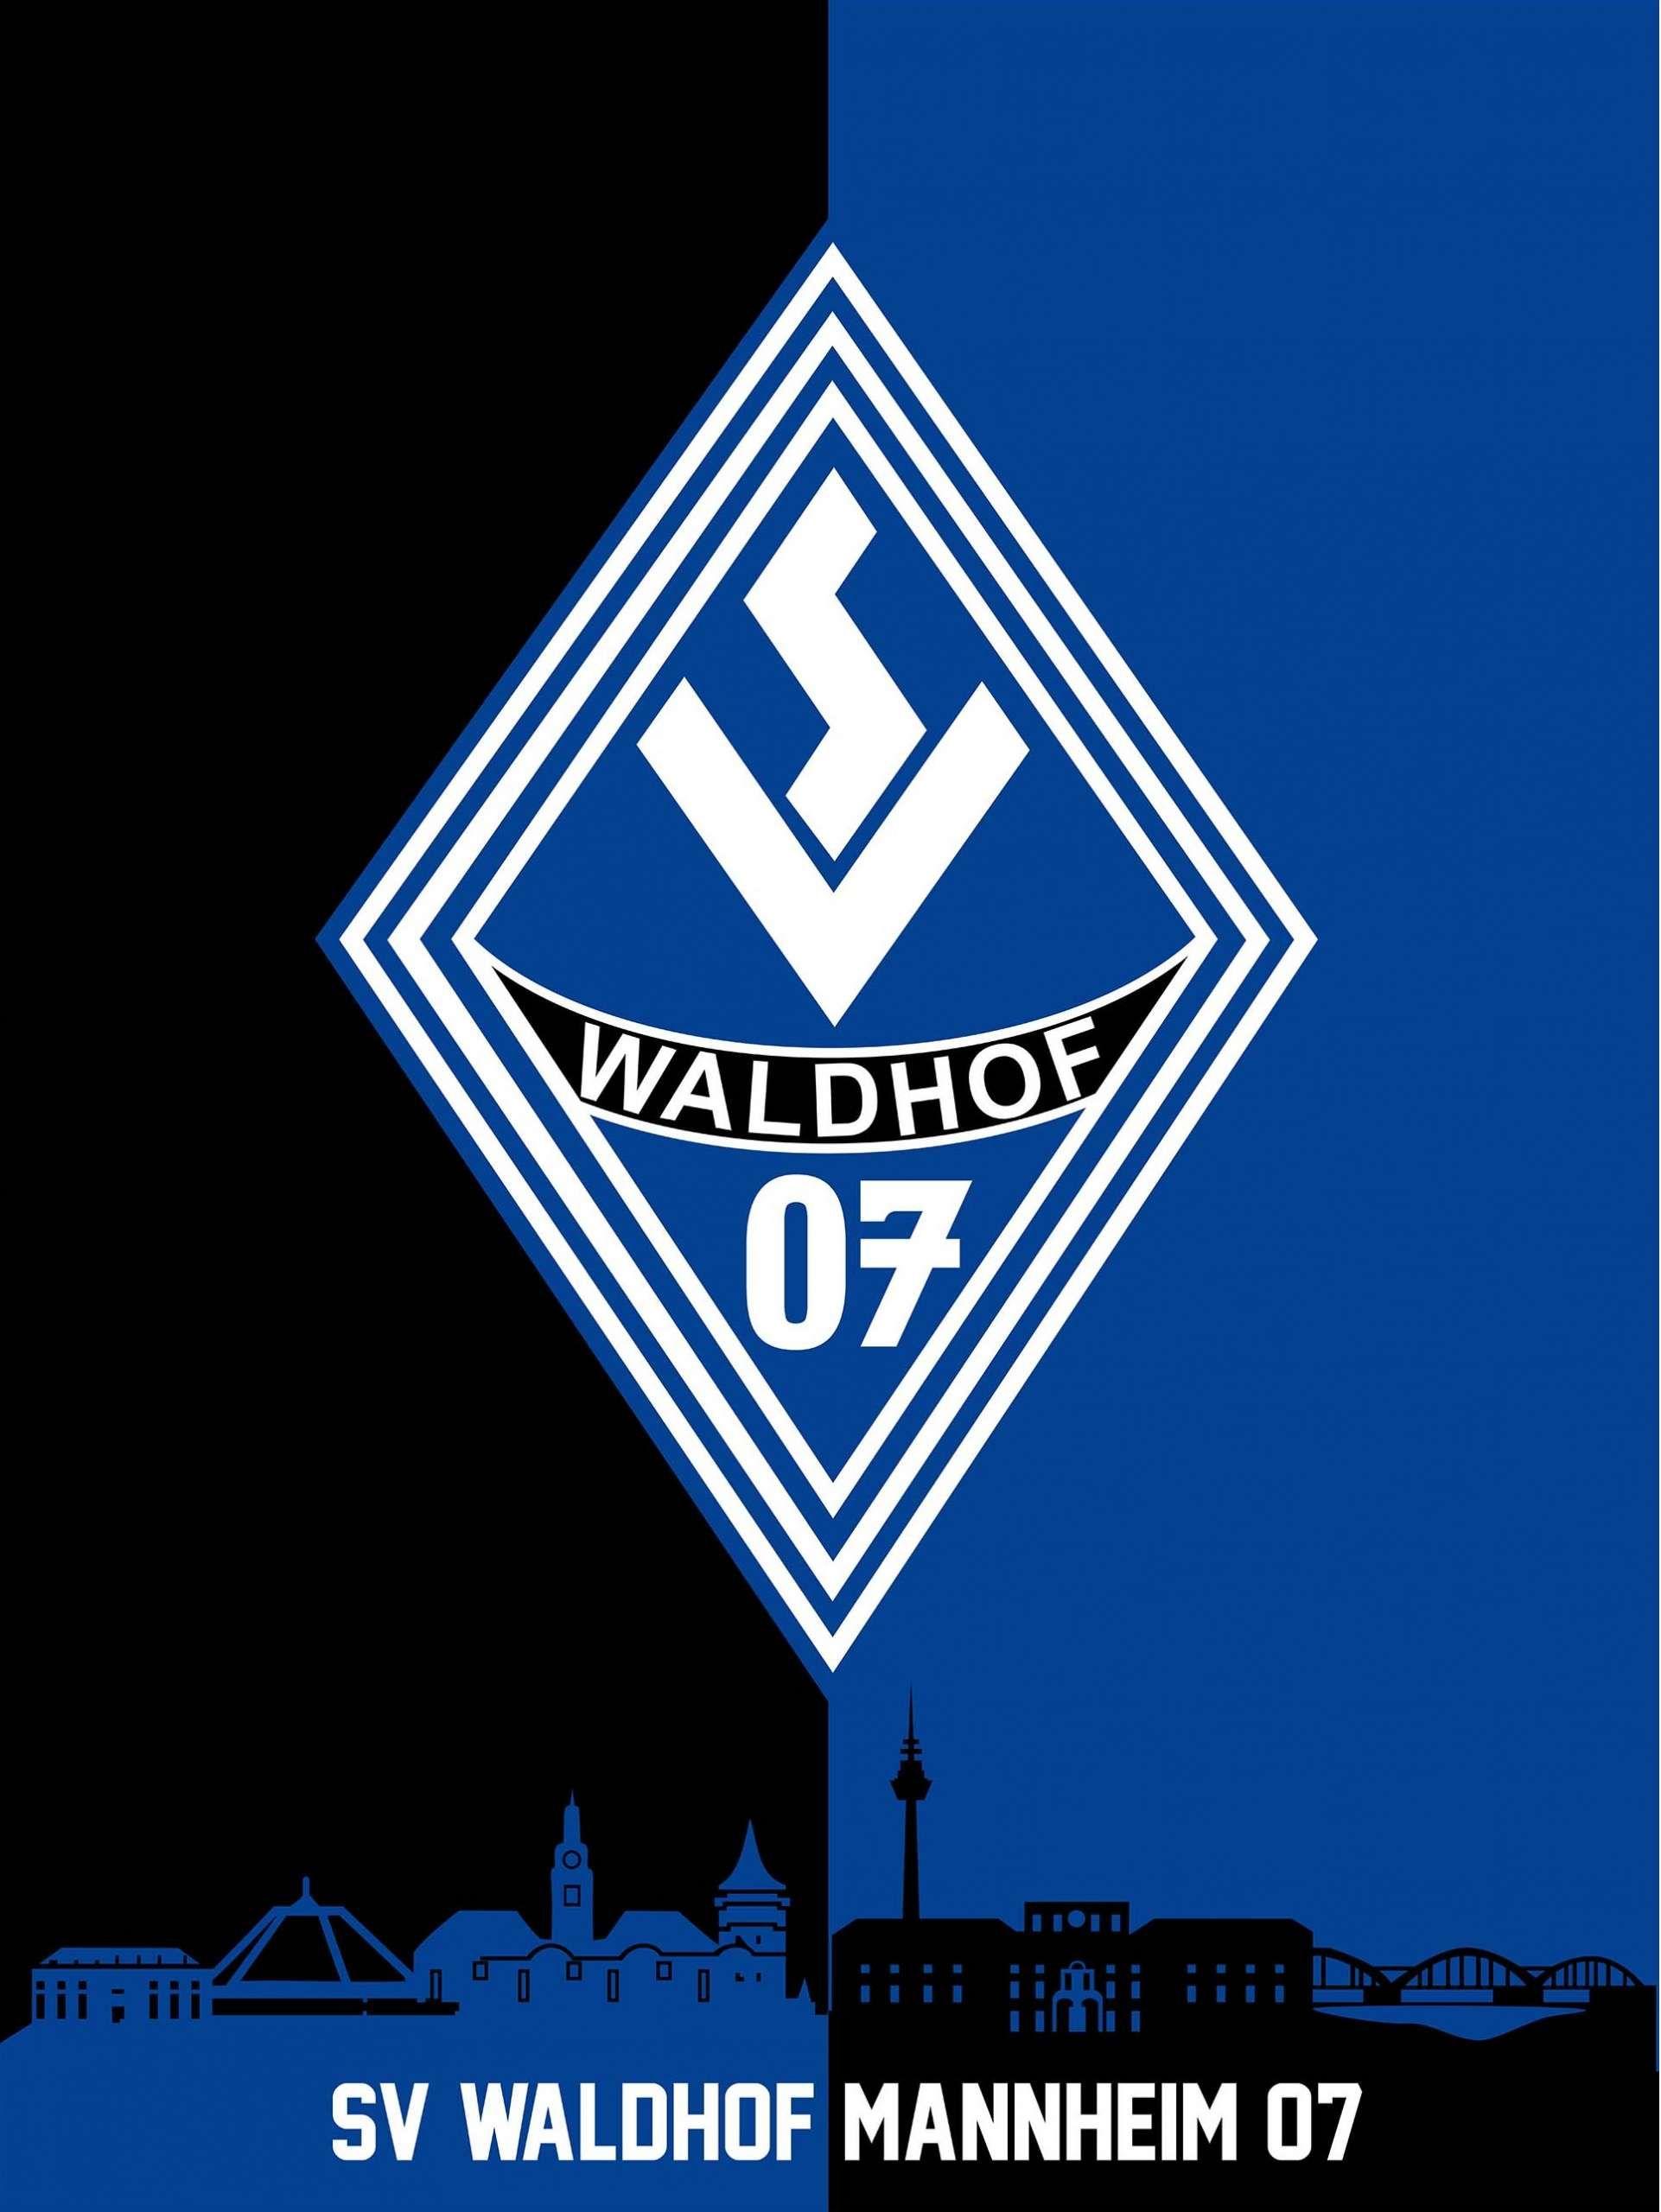 SV Waldhof Mannheim 07 wallpaper. Fussball In Deutschland